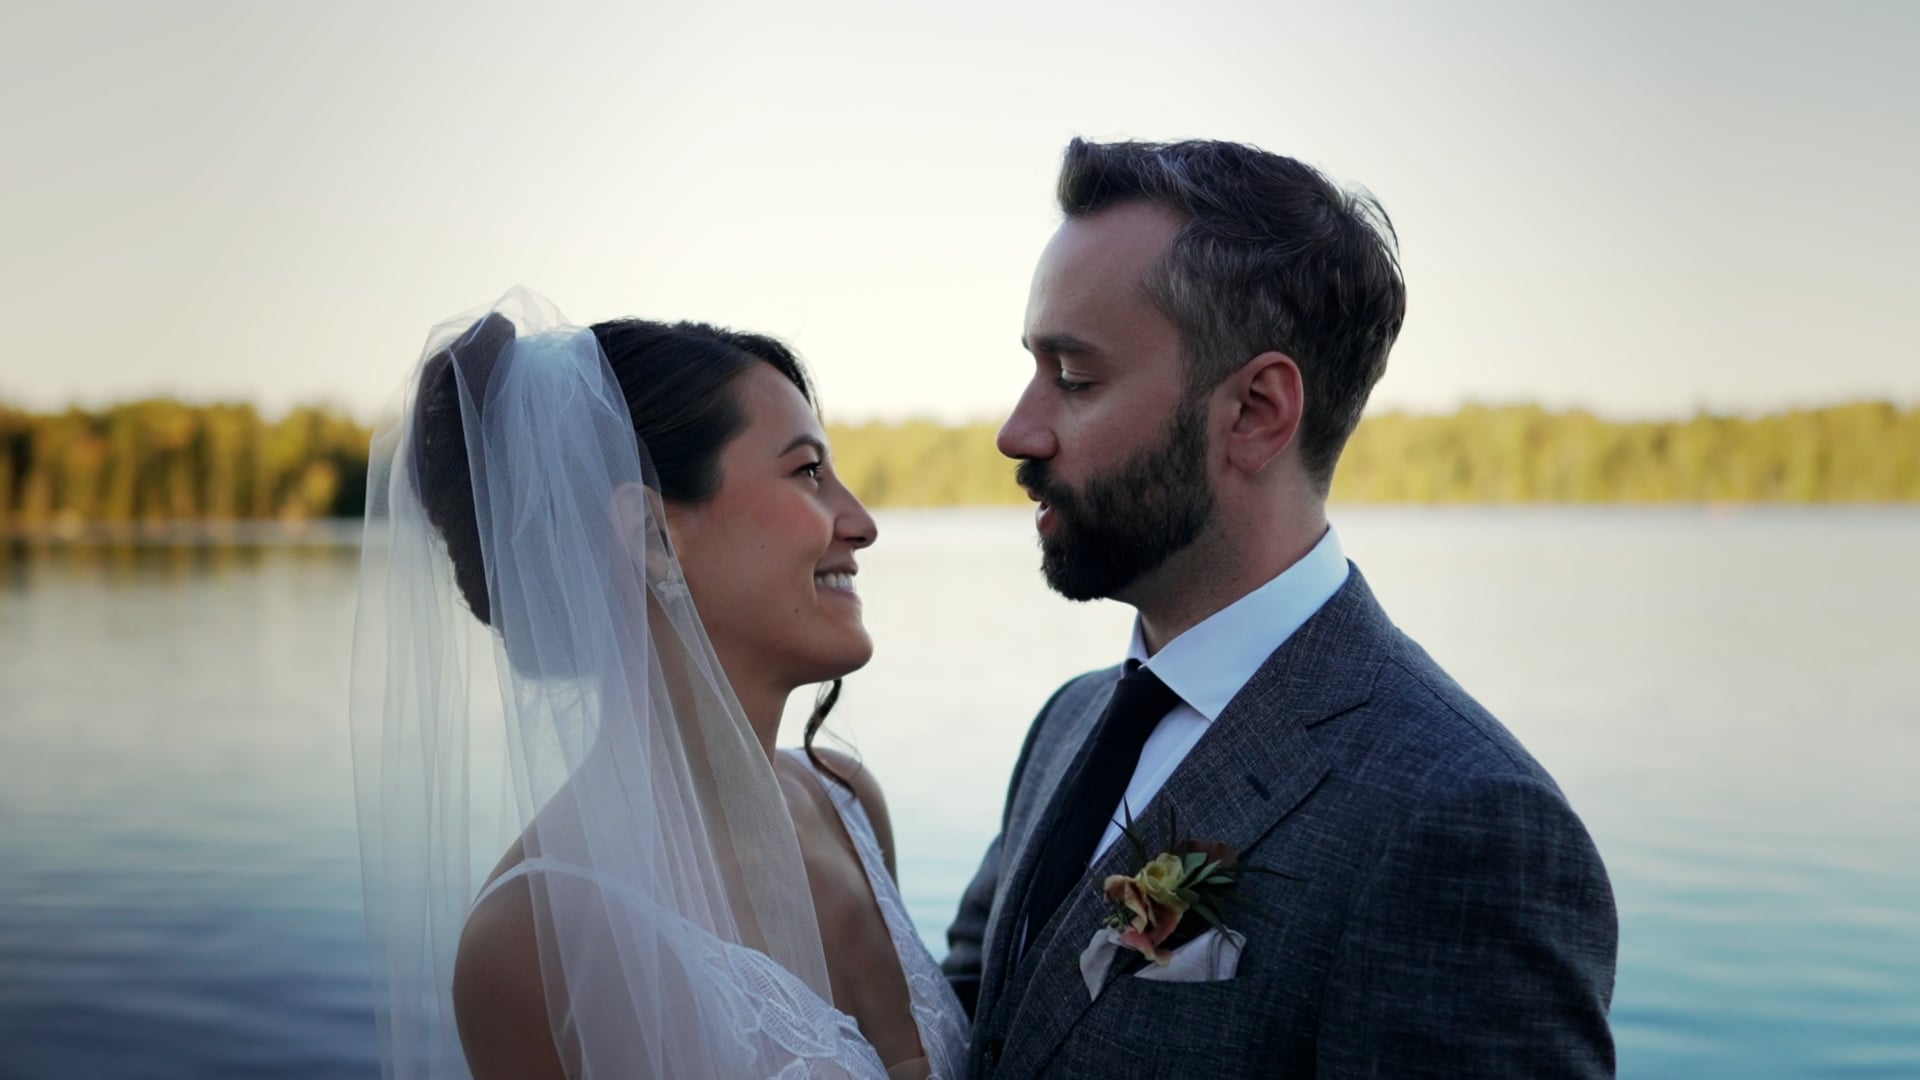 Amanda & Sean | Wedding Highlight Film